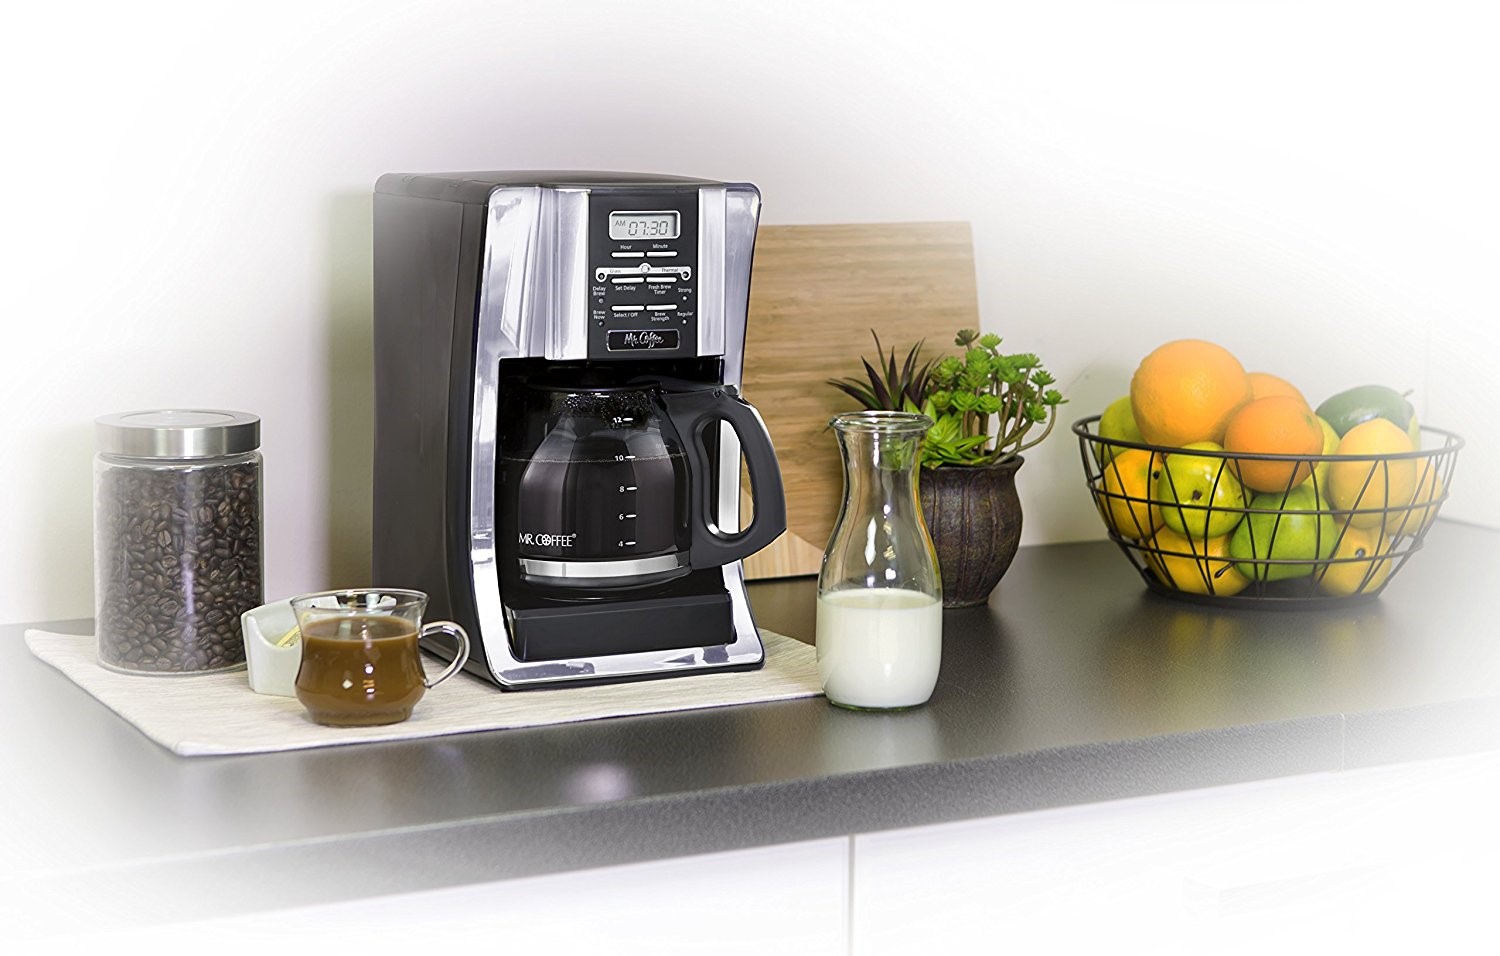 Mr. Coffee BVMC-SJX33GT 12-Cup Programmable Coffeemaker,